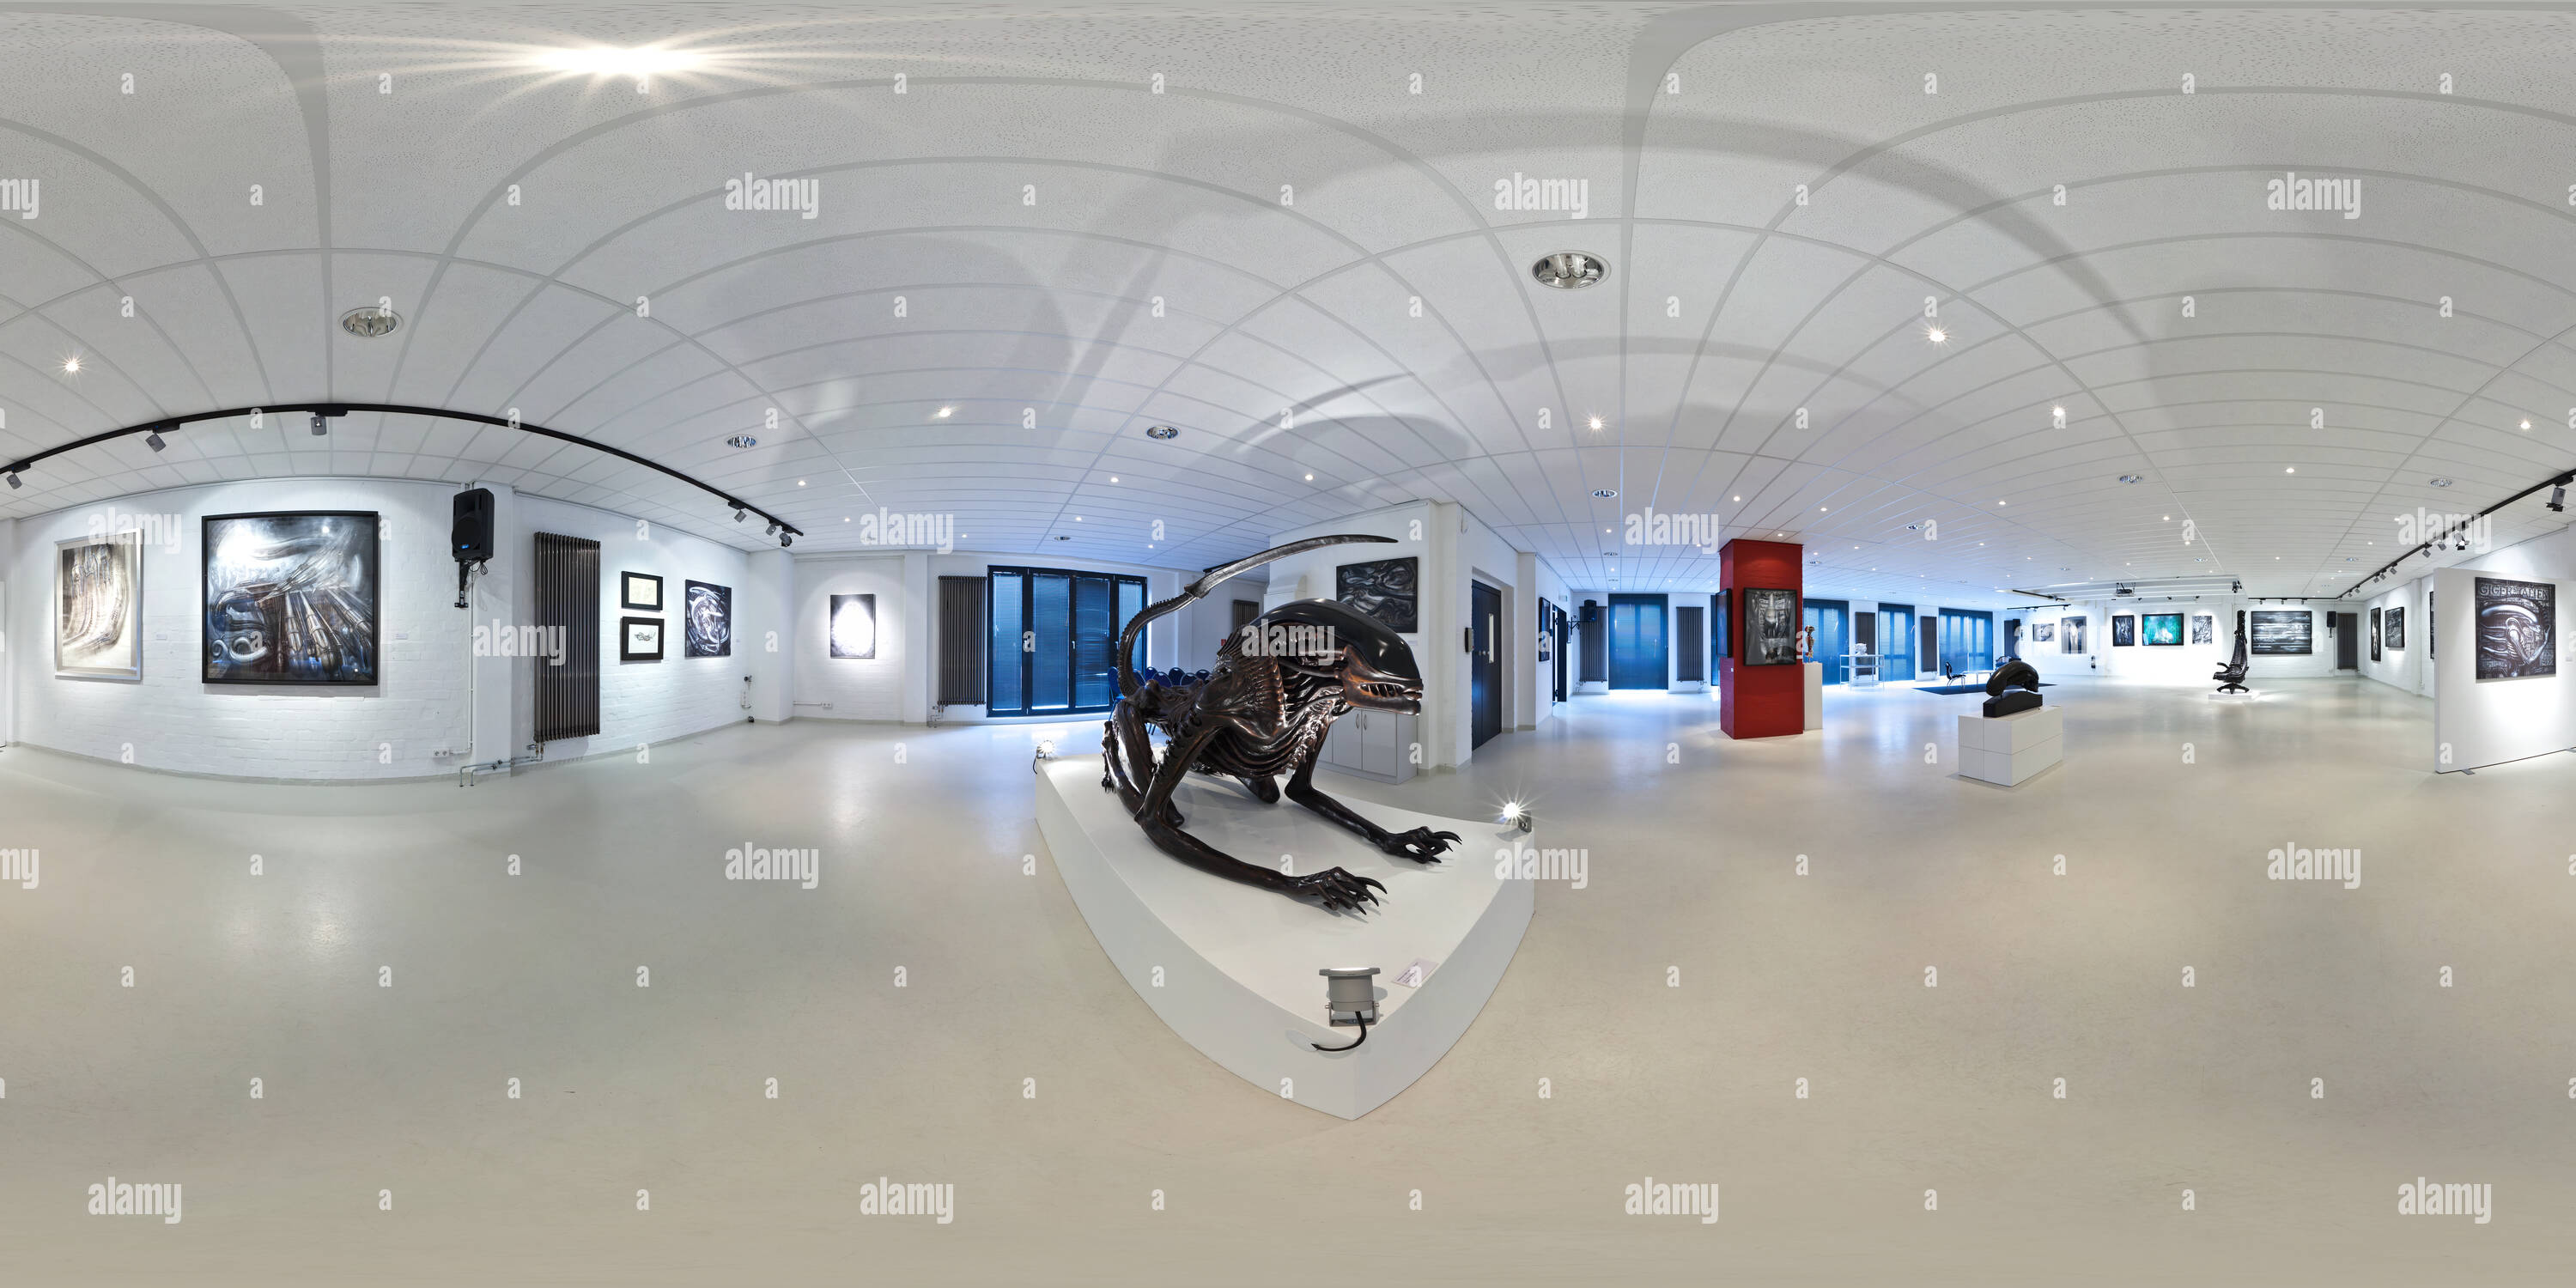 Visualizzazione panoramica a 360 gradi di Alien2 - HR Giger - Fabrik der Kuenste